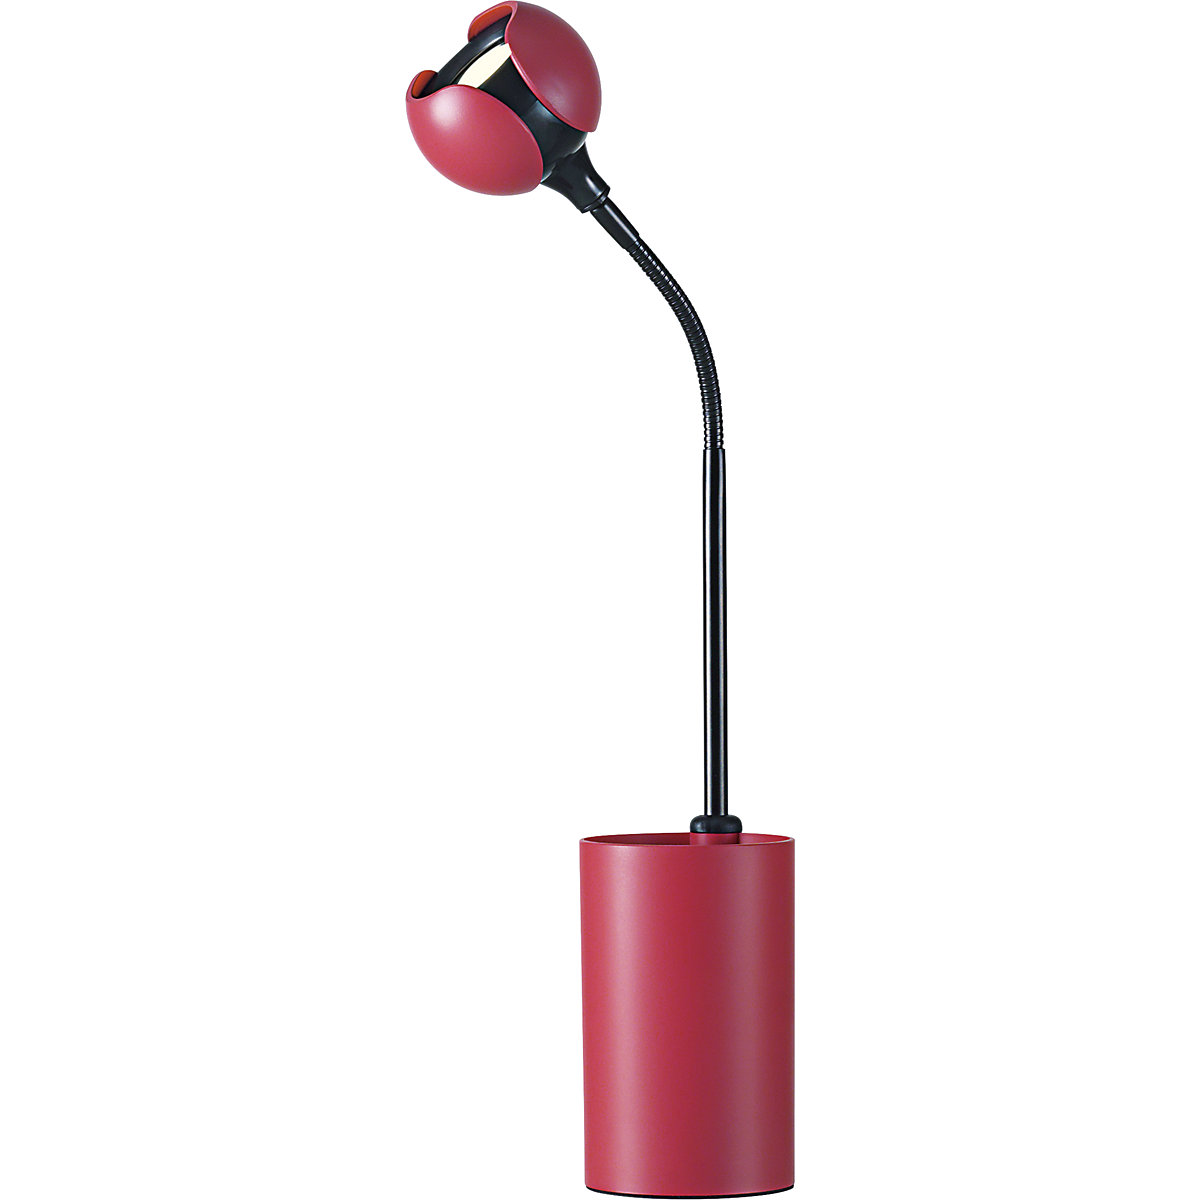 FLOWER LED-es asztali lámpa – Hansa, 475 mm-es magasság, korallpiros-6